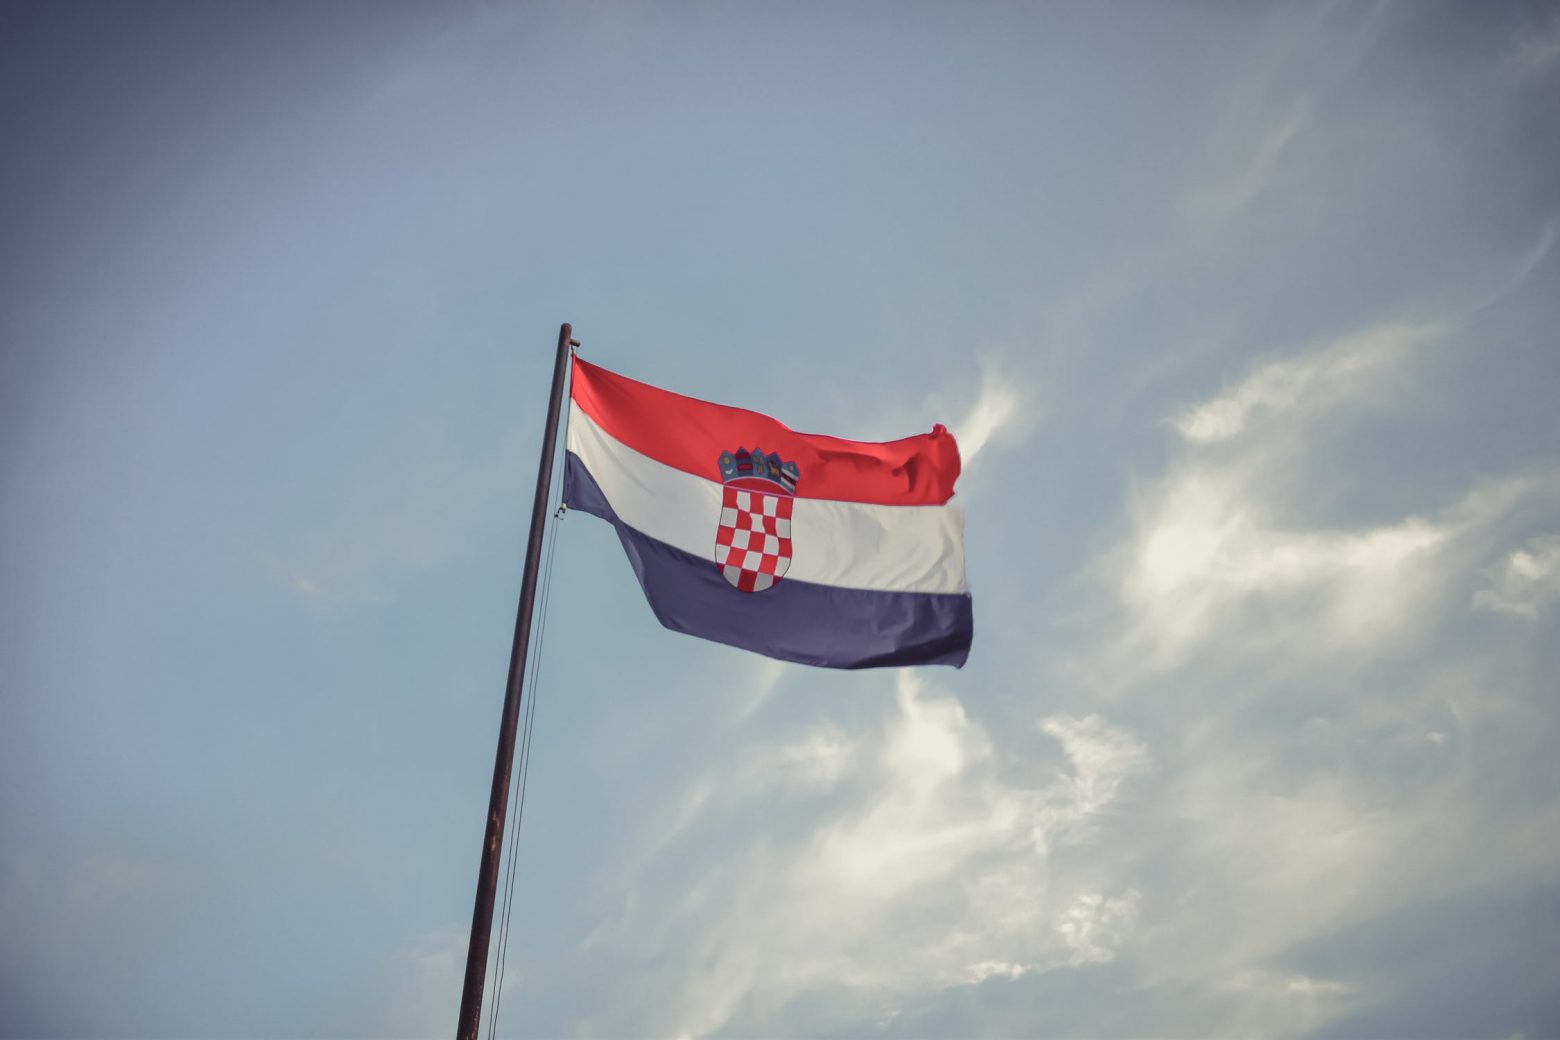 Κροατία - Μειώθηκε κατά 10% ο πληθυσμός της χώρας σε μια δεκαετία